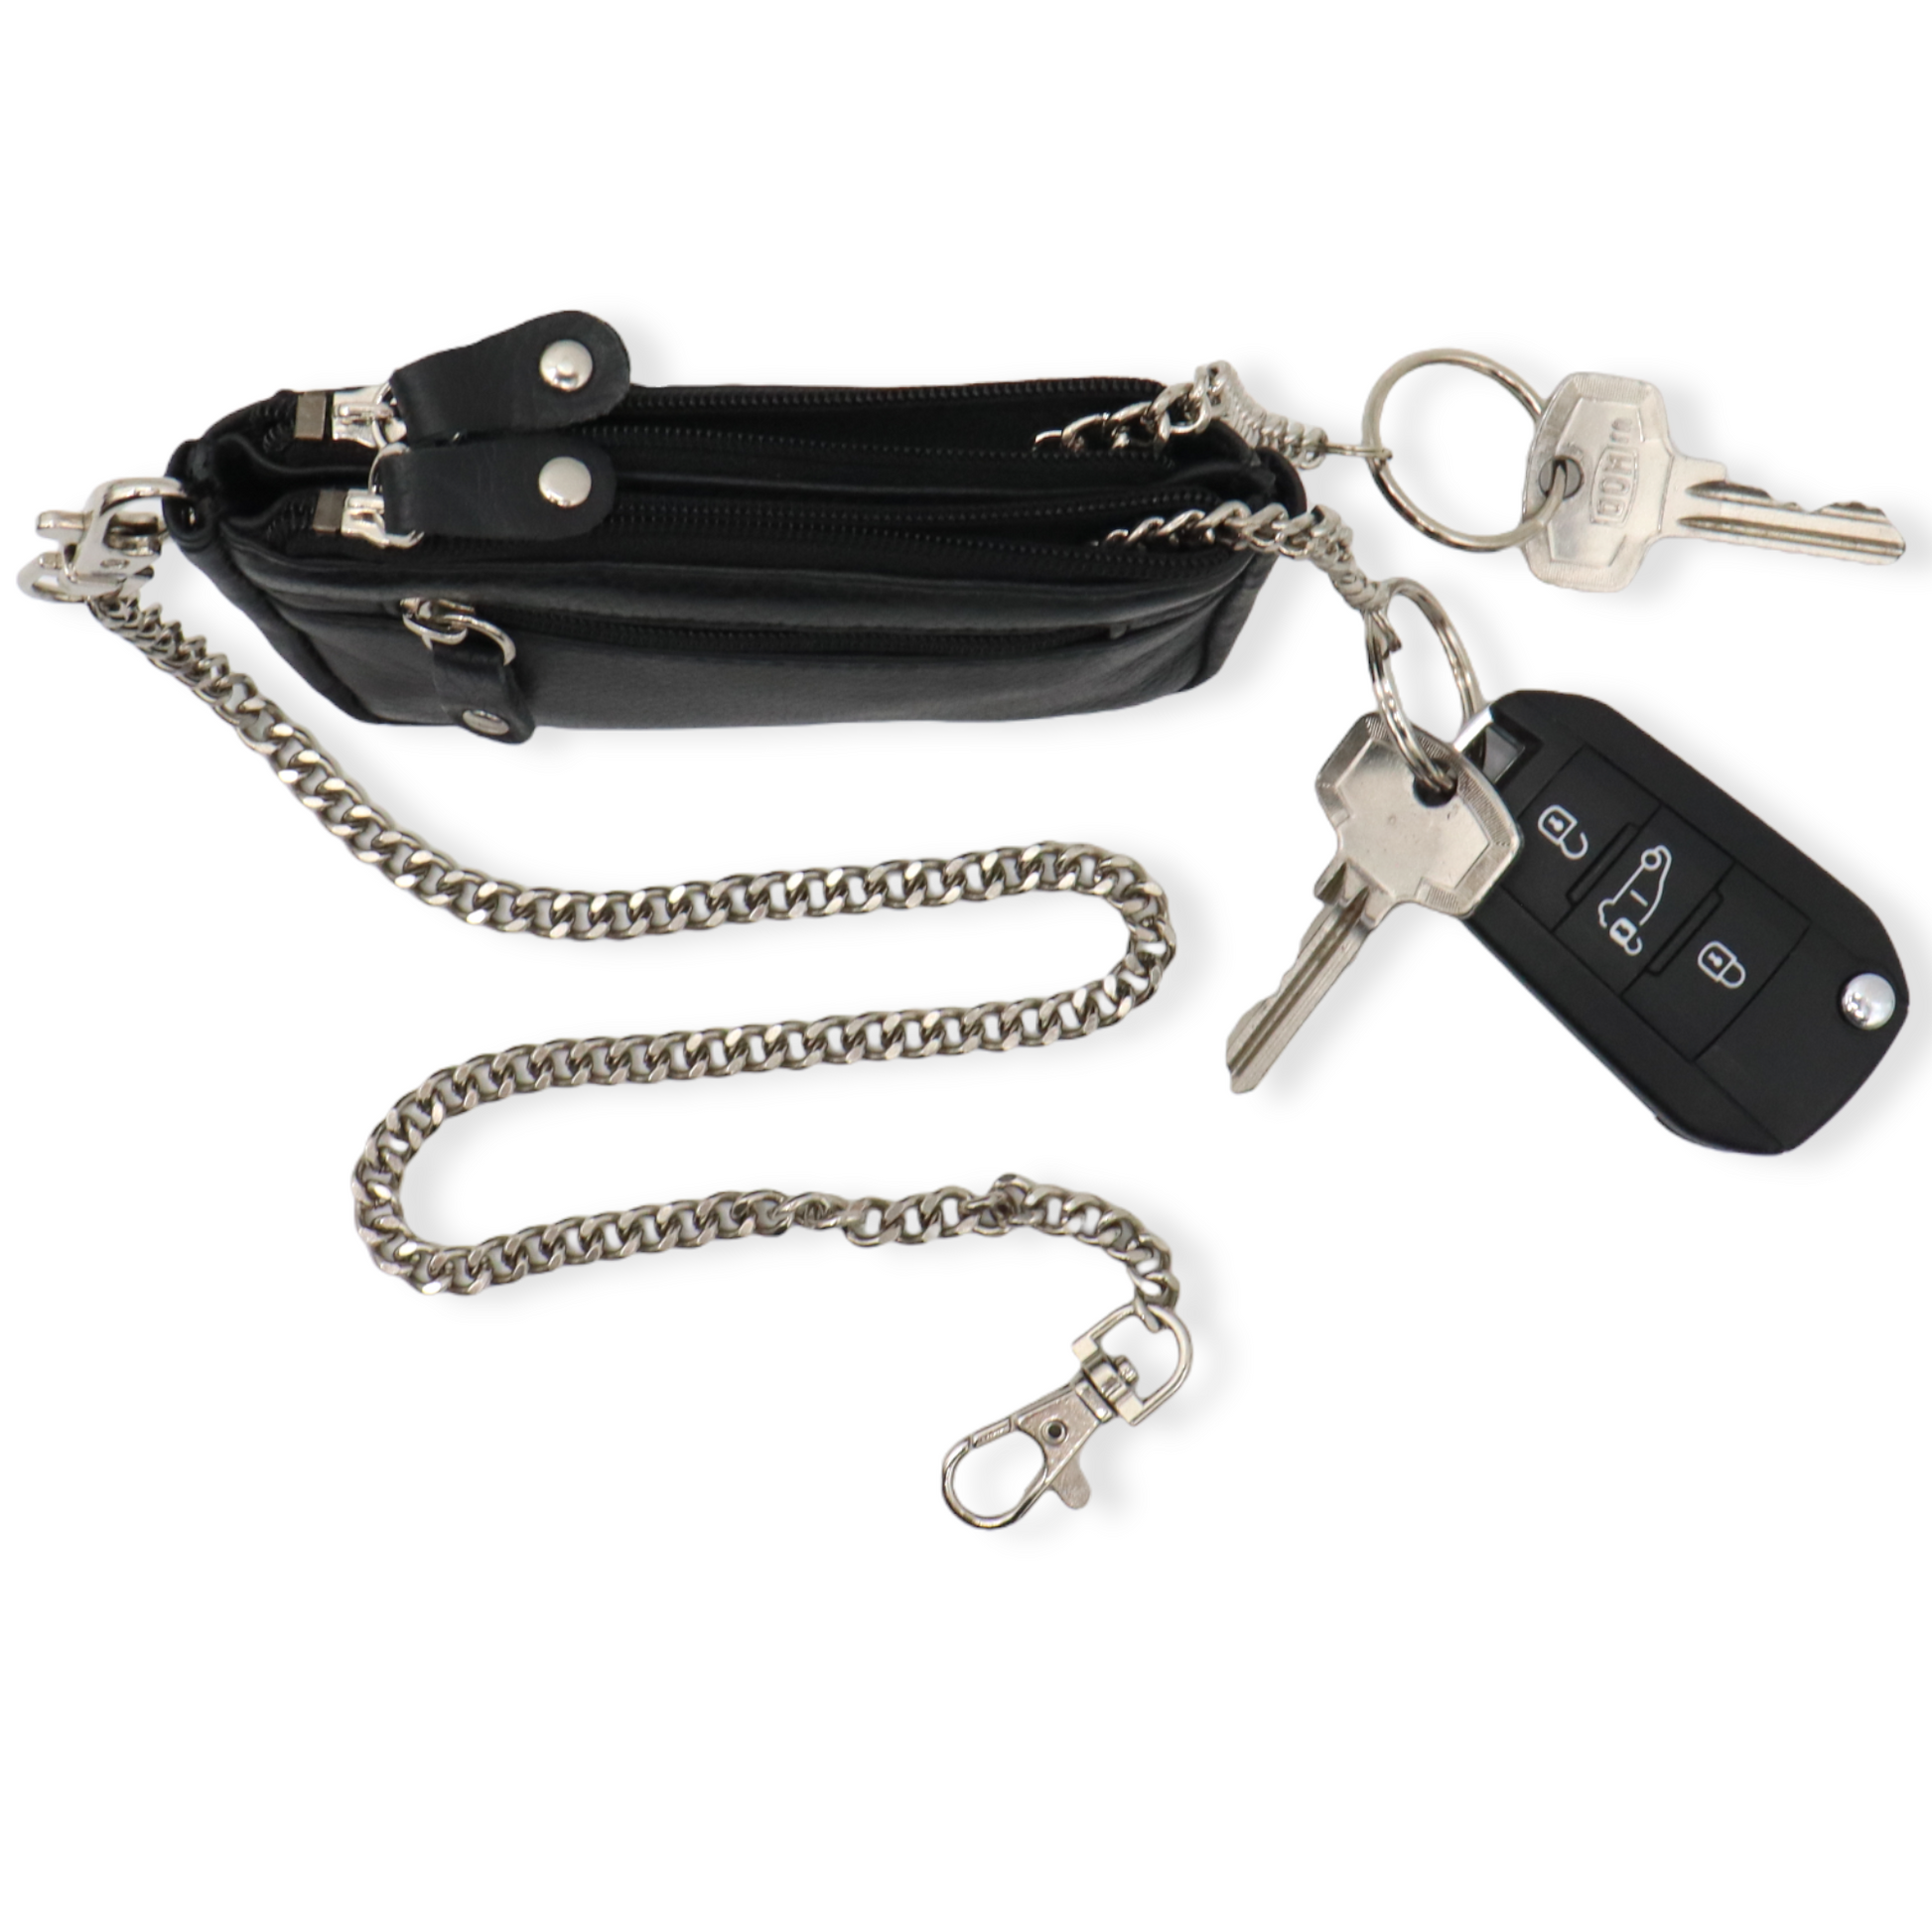 Schlüsseletui mit RFID Schütz - Schlüsselmappe - Schlüsseltasche